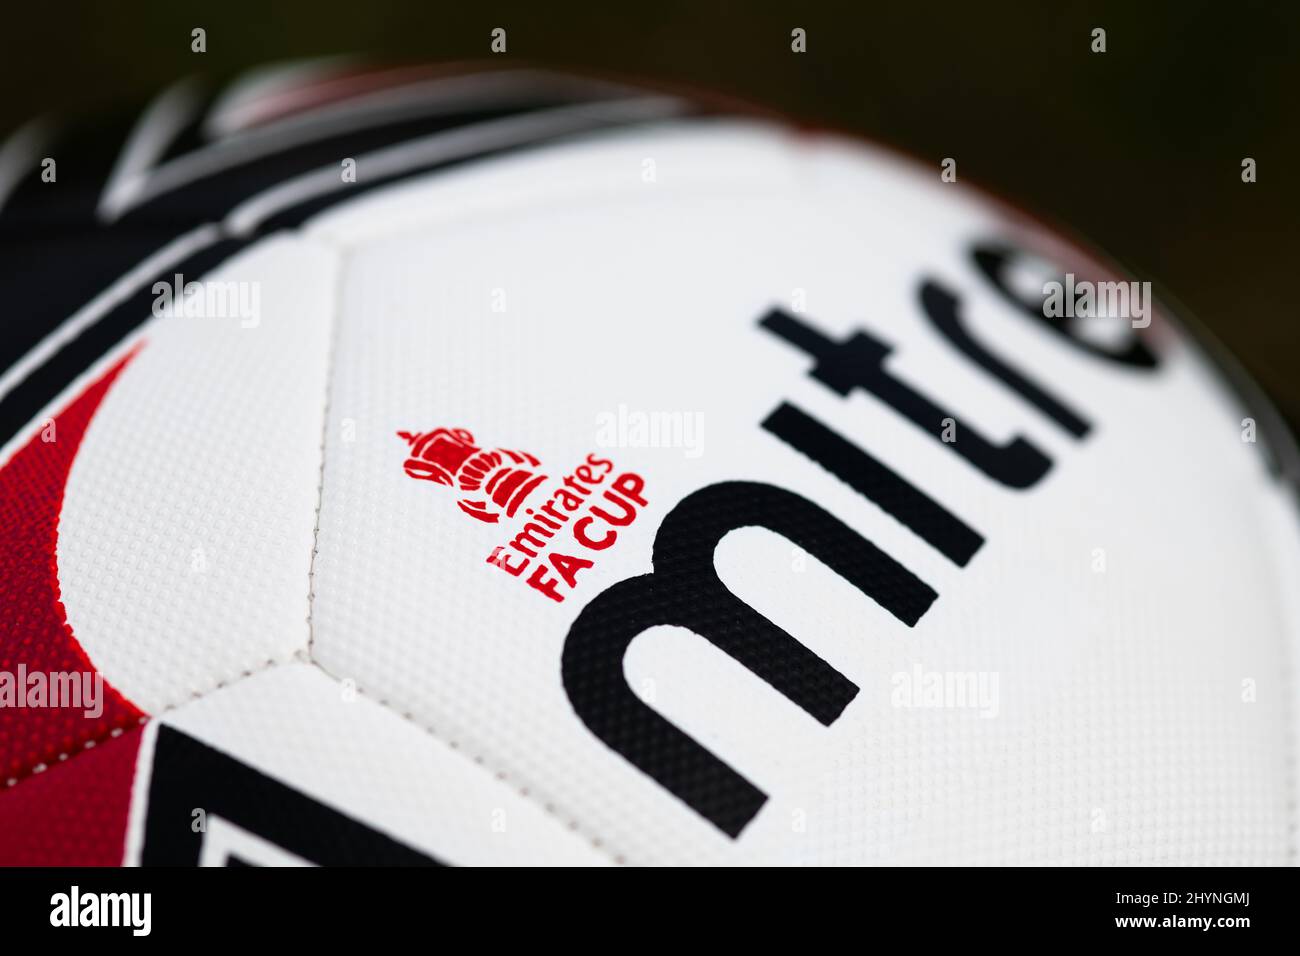 Delta max. De l'onglet Football officiel de la coupe Emirates FA. Banque D'Images